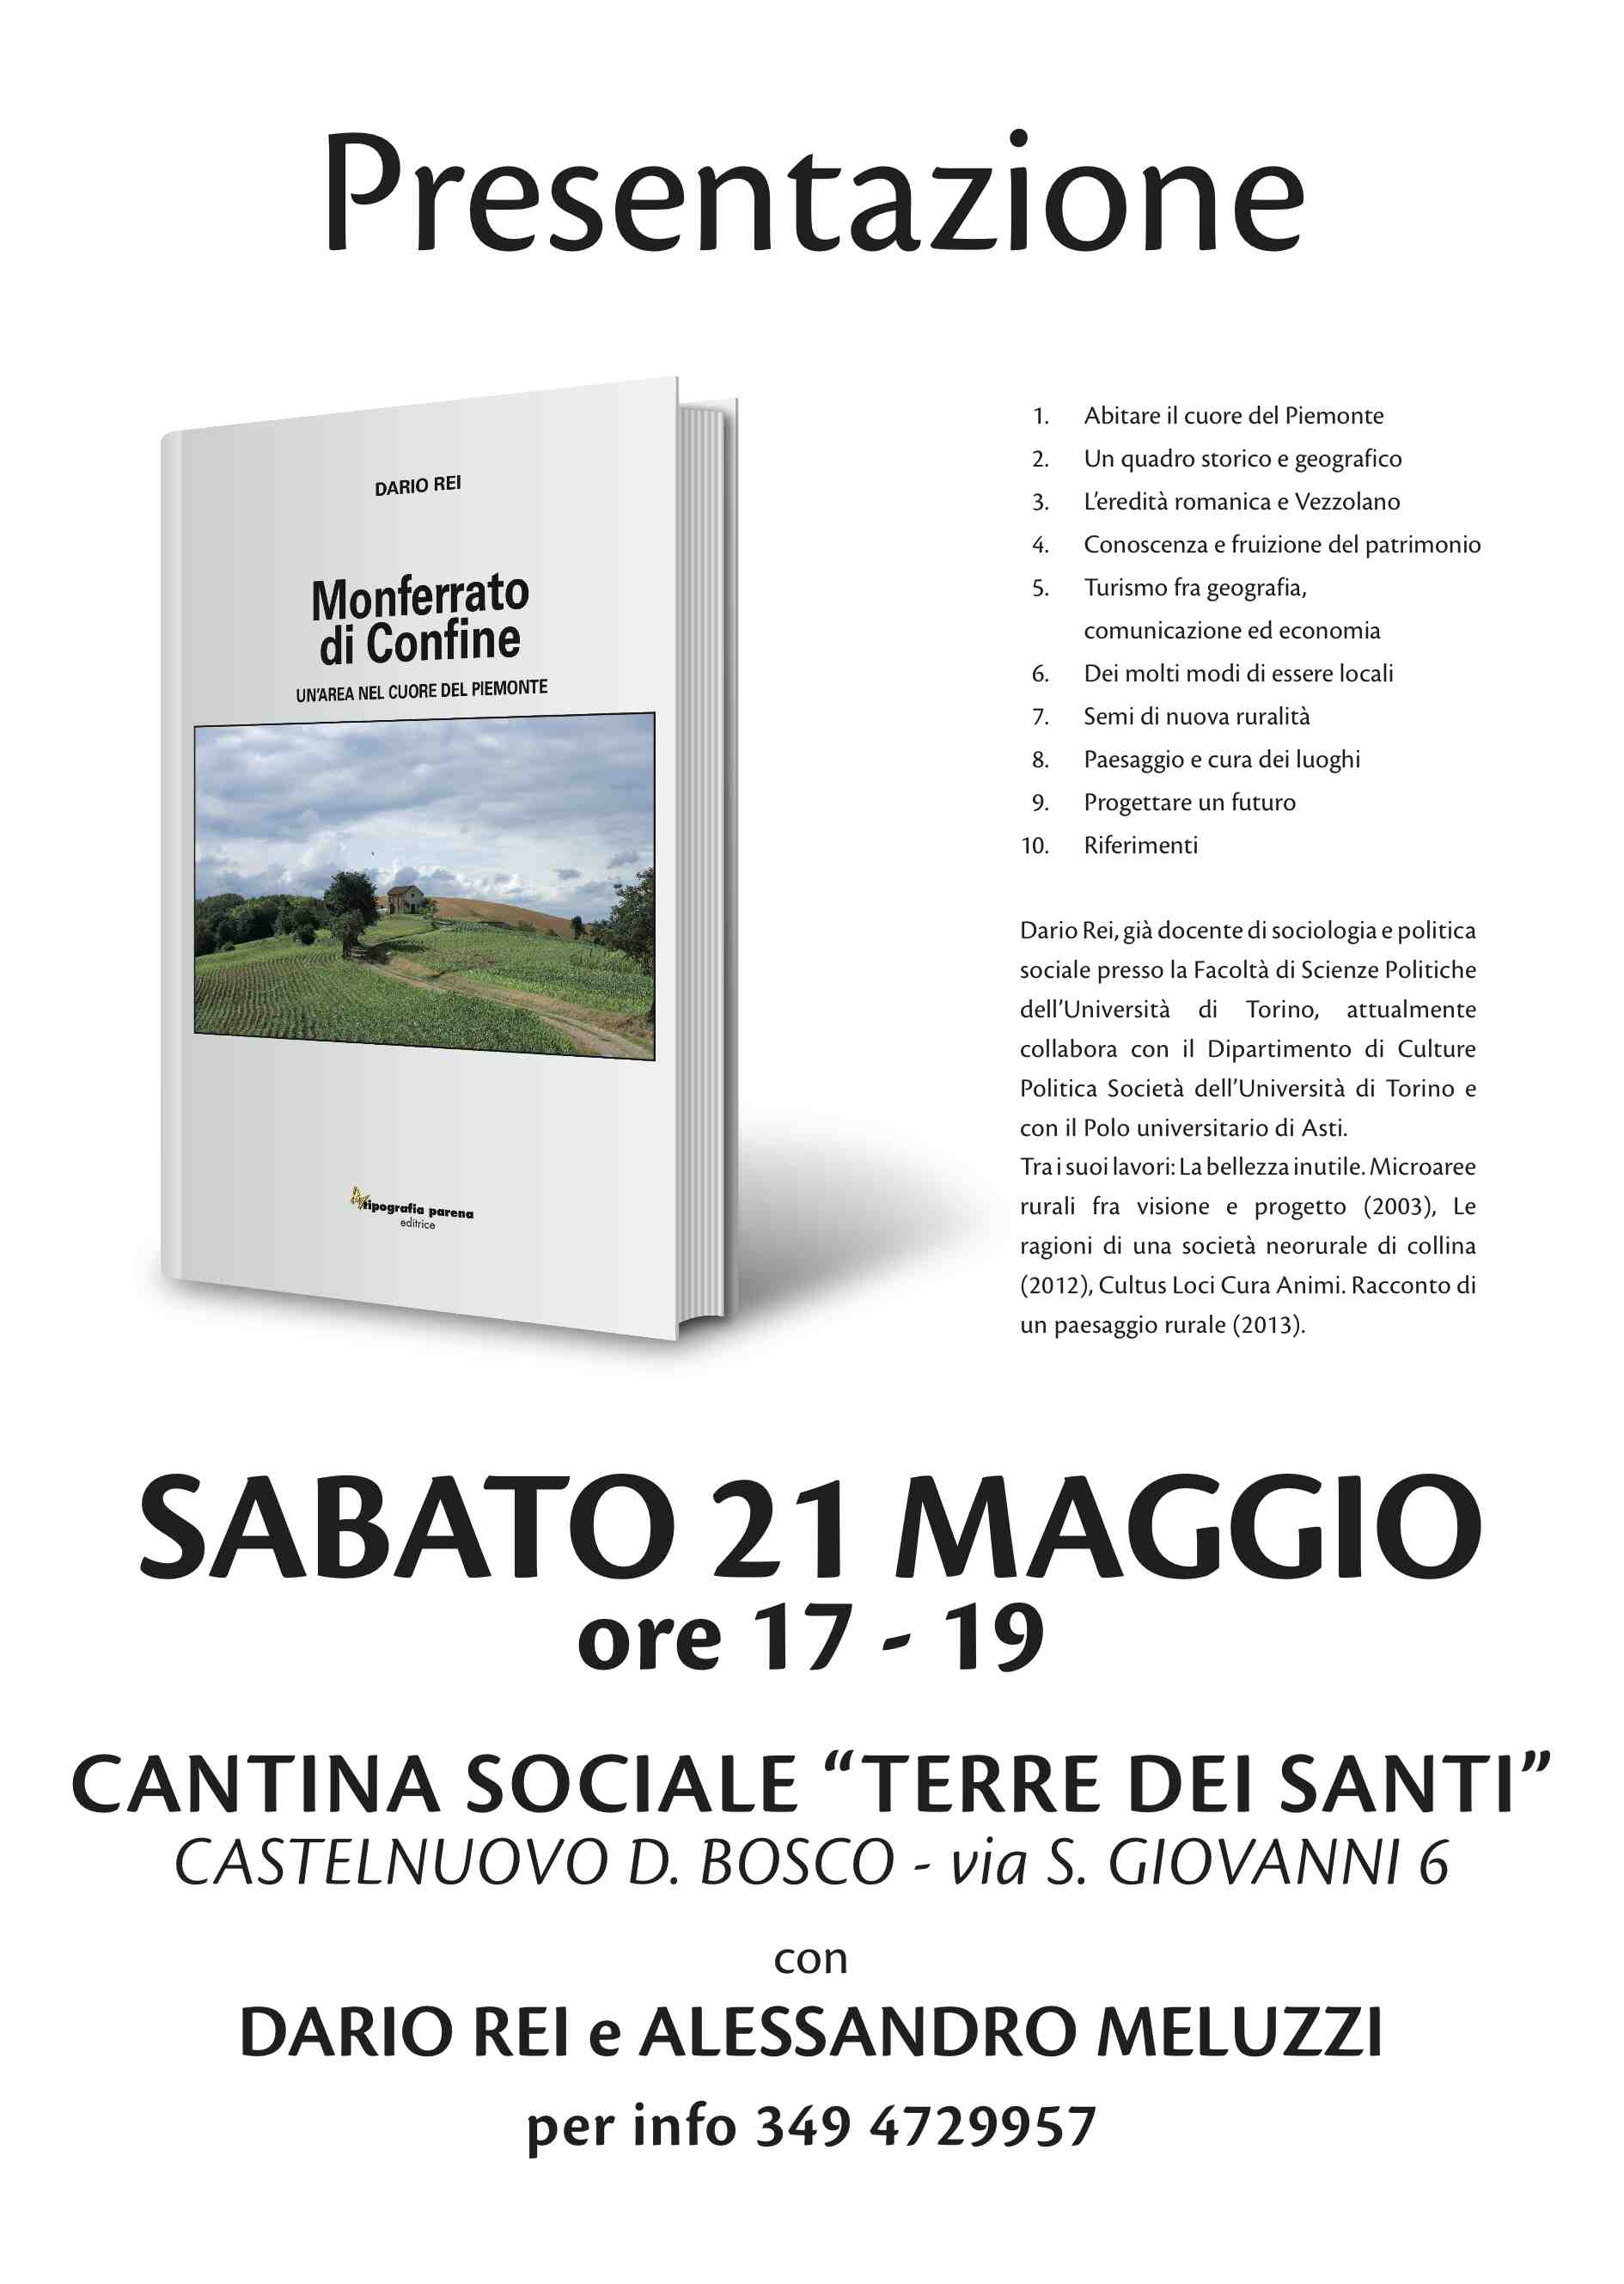 Presentazione del Libro Monferrato di confine di Dario Rei presso la Cantina sociale Terre dei Santi, sabato 21 maggio 2016